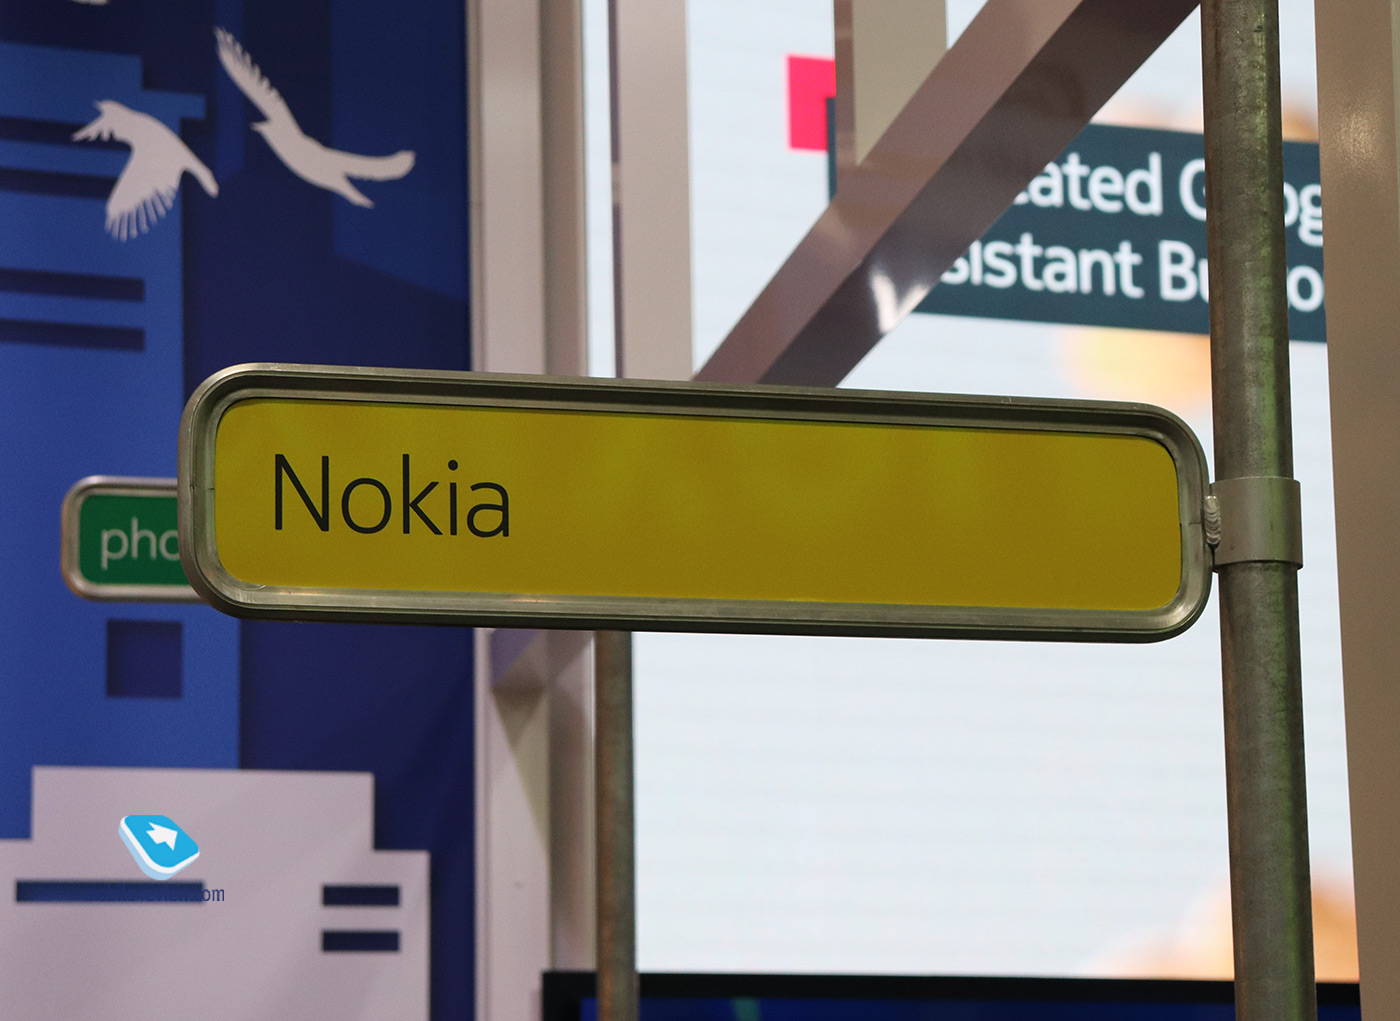 5 камер на Nokia 9 PureView – мало или достаточно? Все анонсы Nokia на MWC 2019